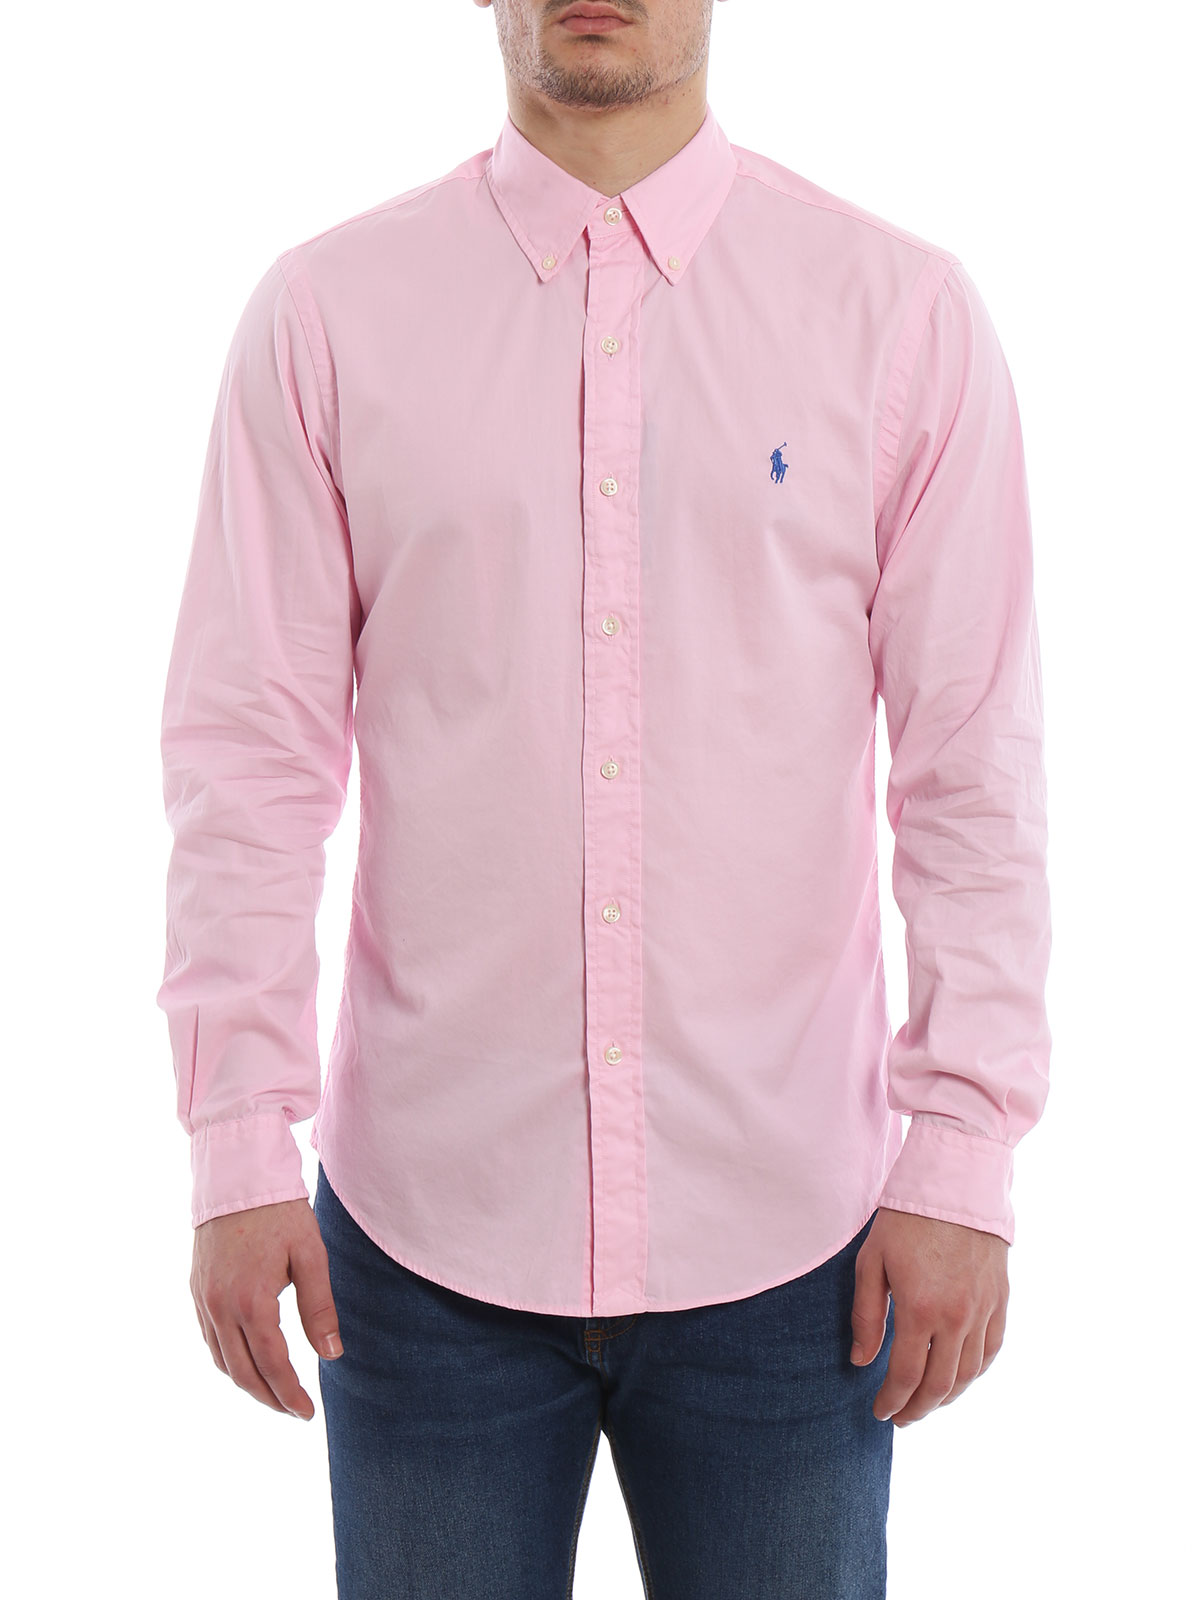 Shirts Polo Ralph Lauren - Pink cotton shirt - 710741788001 | iKRIX.com